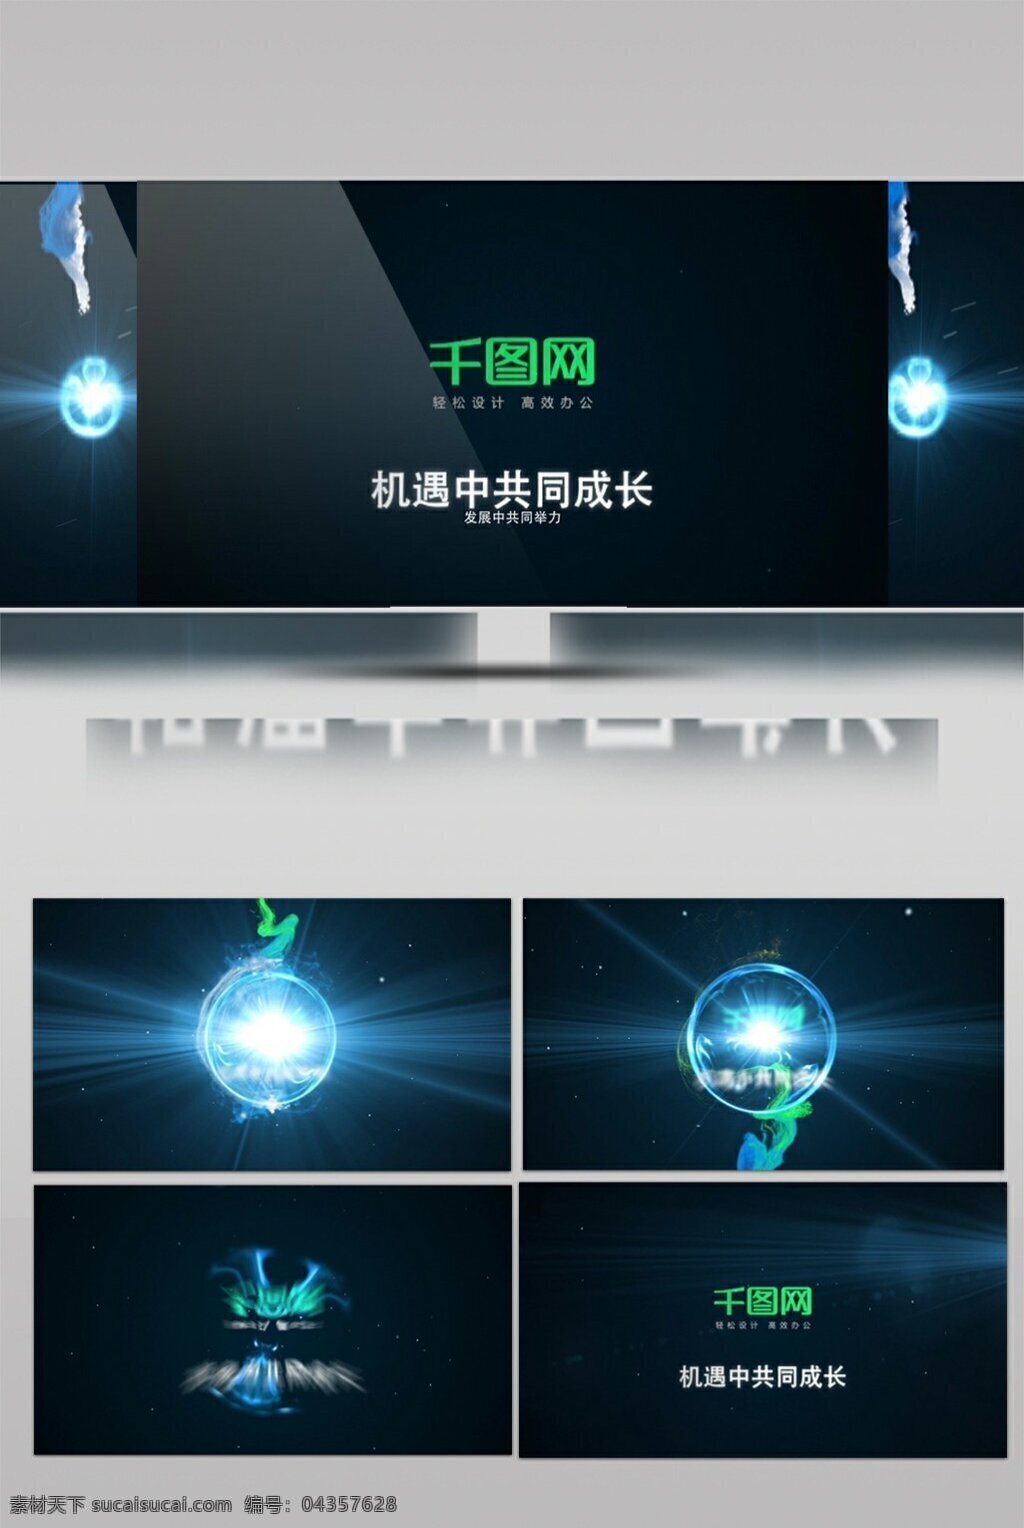 魔幻 能量 球 标志 演绎 特效 ae 模板 片头 logo演绎 光芒光效 能量爆炸 科技标志 魔法球体